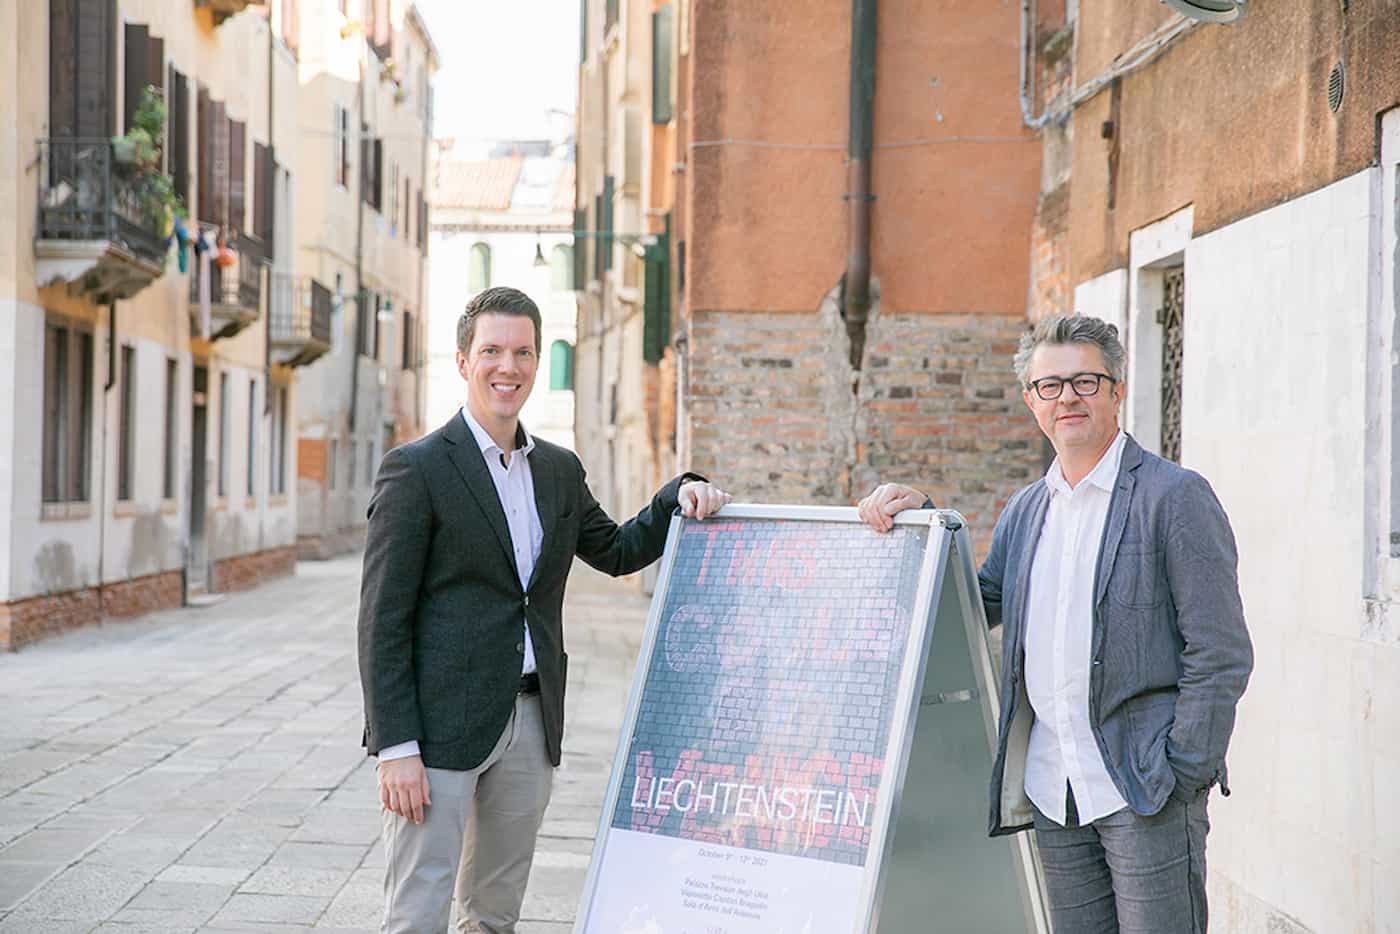 Regierungsrat Manuel Frick und Alberto Alessi, Dozent für Architektur an der Universität Liechtenstein vor dem Palazzo Trevisan in Venedig (ein Arbeitsort der Universität im Zusammenhang mit der Biennale)